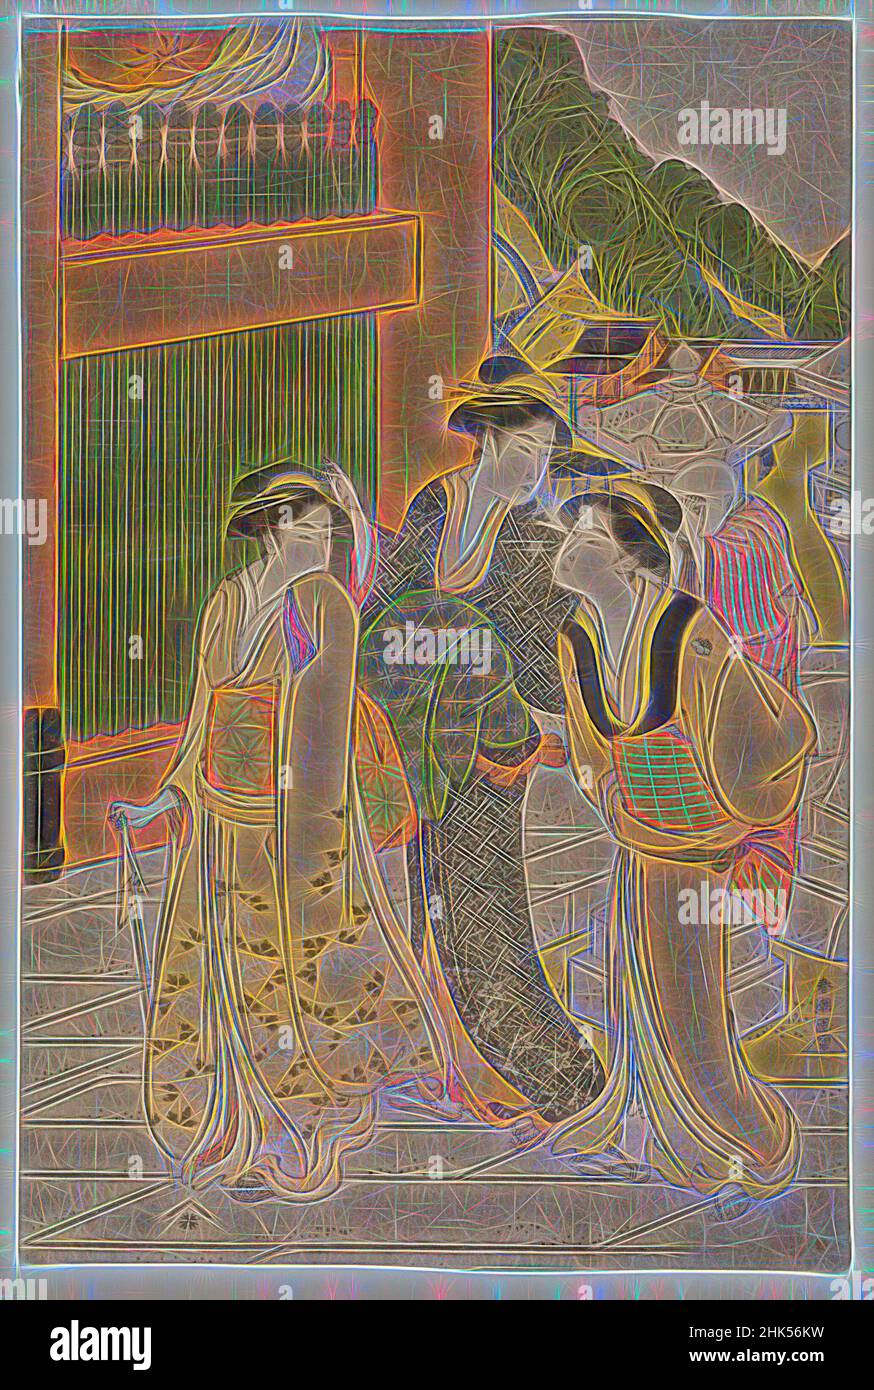 Inspirado en la visita al Templo de Fudō, Katsukawa Shunsho, Japonés, 1726-1793, Impresión en madera en color sobre papel, Japón, Ca. 1790, Período Edo, 15 x 10 pulg., 38,1 x 25,5 cm, Bijin, Bijinga, Período Edo, Japón, Japonés, Kimono, Nishiki-e, Mujeres, Reimaginado por Artotop. Arte clásico reinventado con un toque moderno. Diseño de brillo cálido y alegre y luminosidad e radiación de rayos de luz. Fotografía inspirada en el surrealismo y el futurismo, que abarca la energía dinámica de la tecnología moderna, el movimiento, la velocidad y la revolución de la cultura Foto de stock